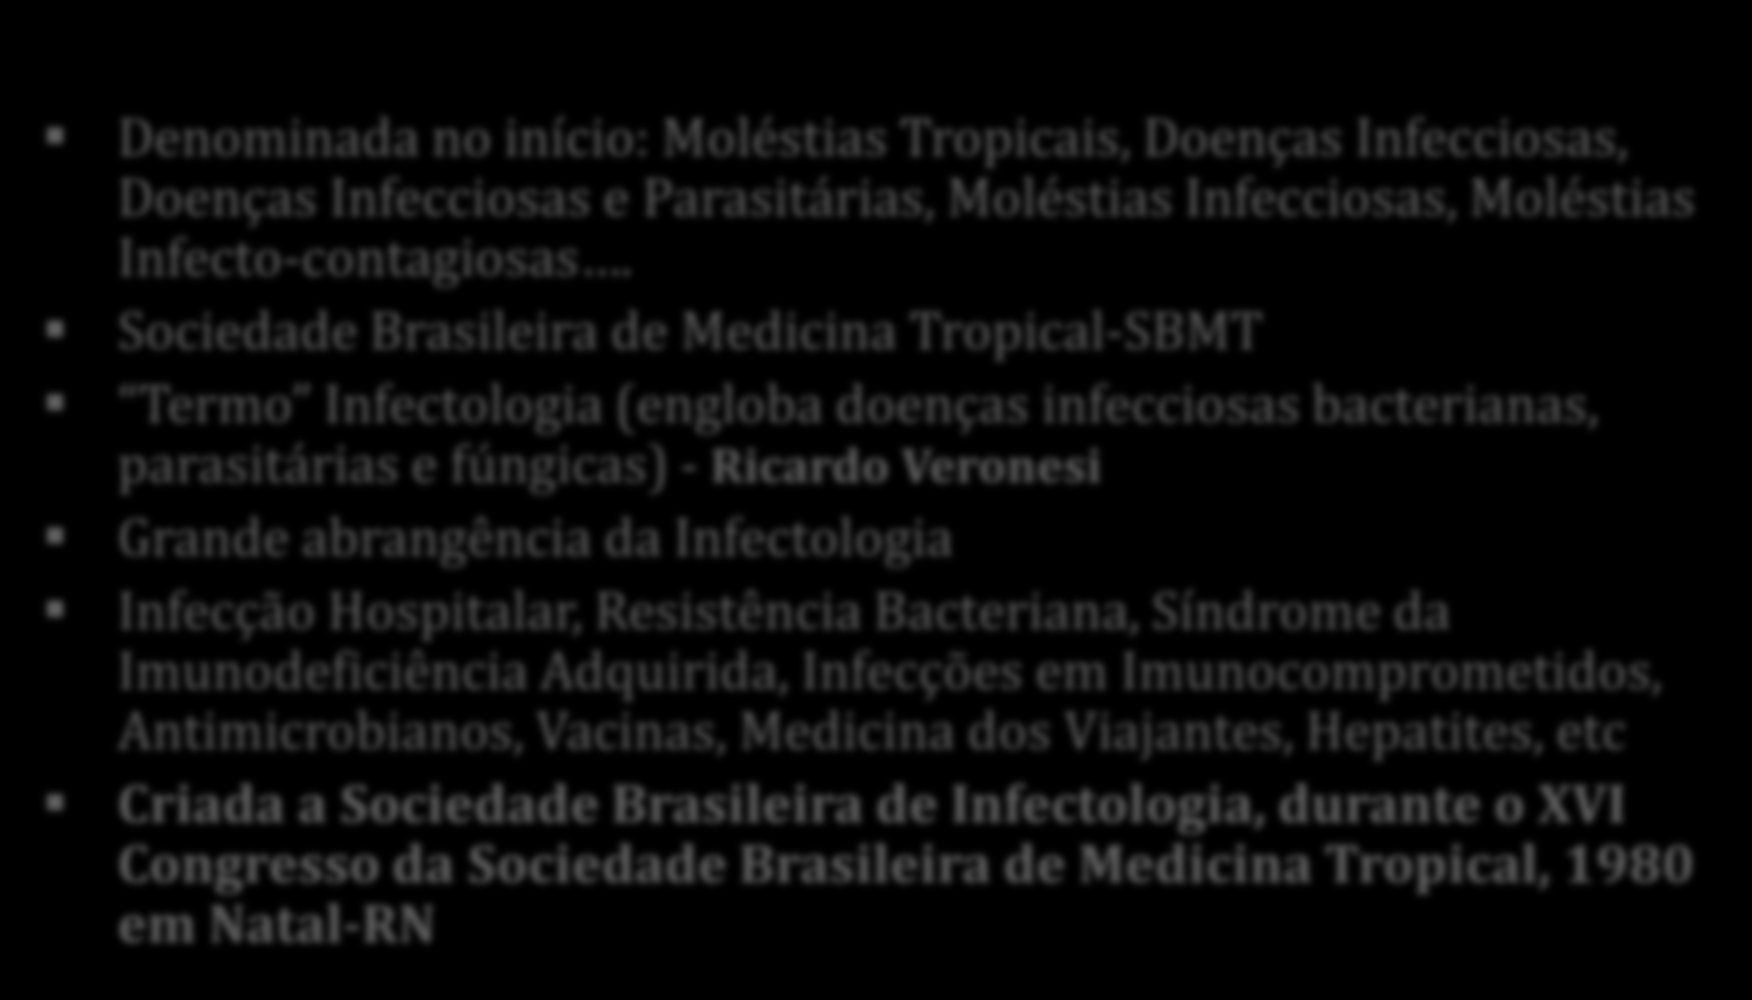 A Infectologia nas Últimas Décadas Denominada no início: Moléstias Tropicais, Doenças Infecciosas, Doenças Infecciosas e Parasitárias, Moléstias Infecciosas, Moléstias Infecto-contagiosas.